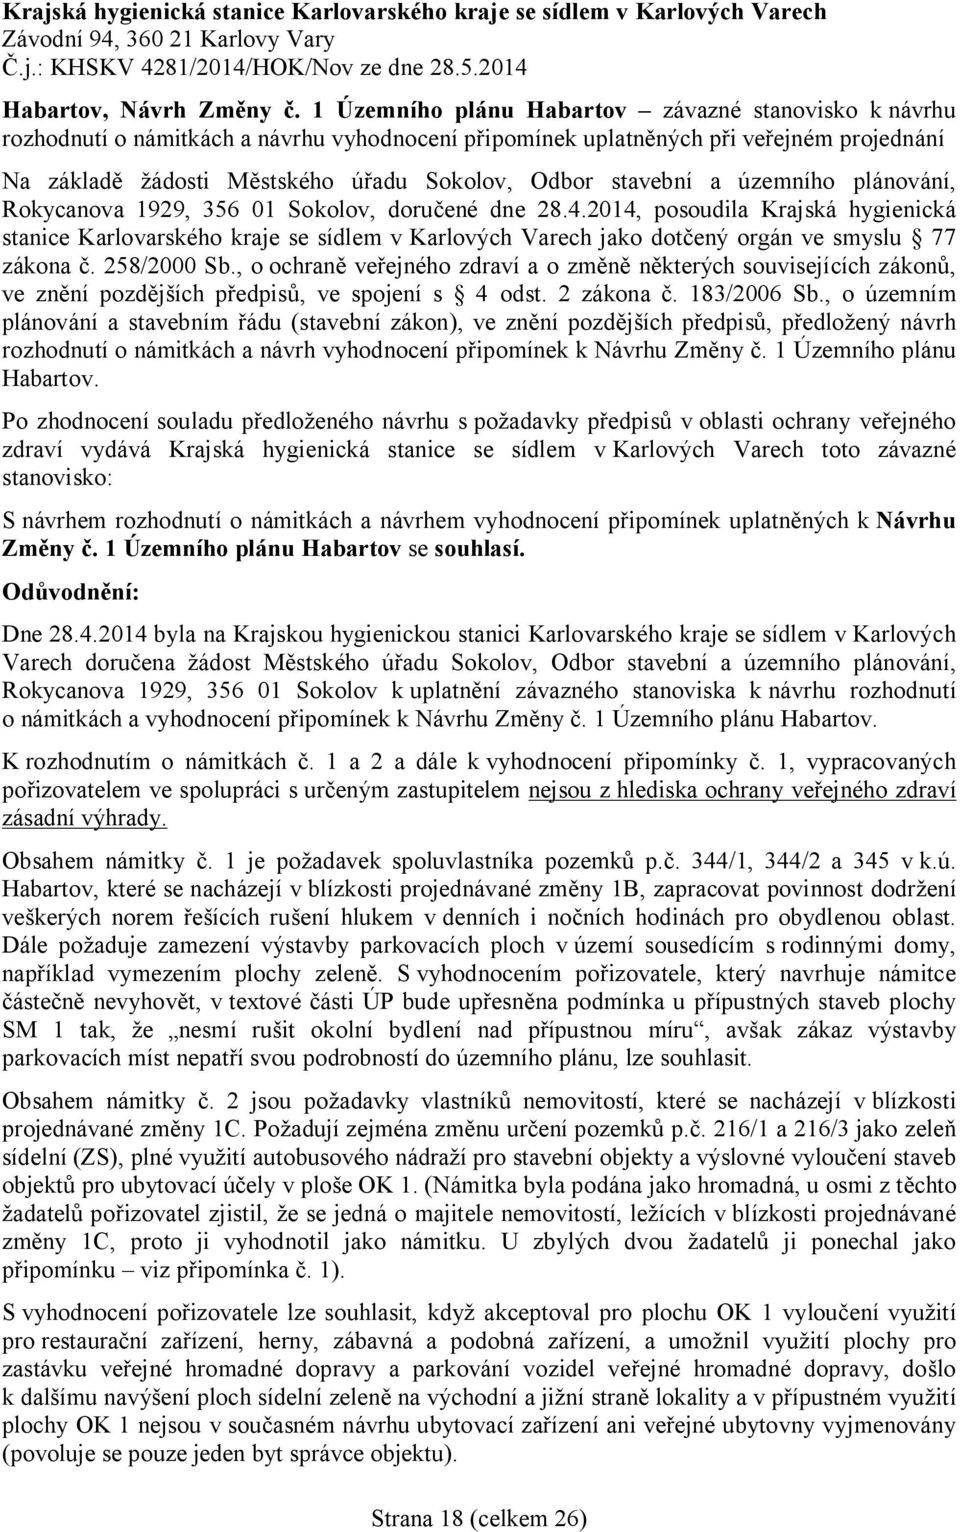 stavební a územního plánování, Rokycanova 1929, 356 01 Sokolov, doru ené dne 28.4.